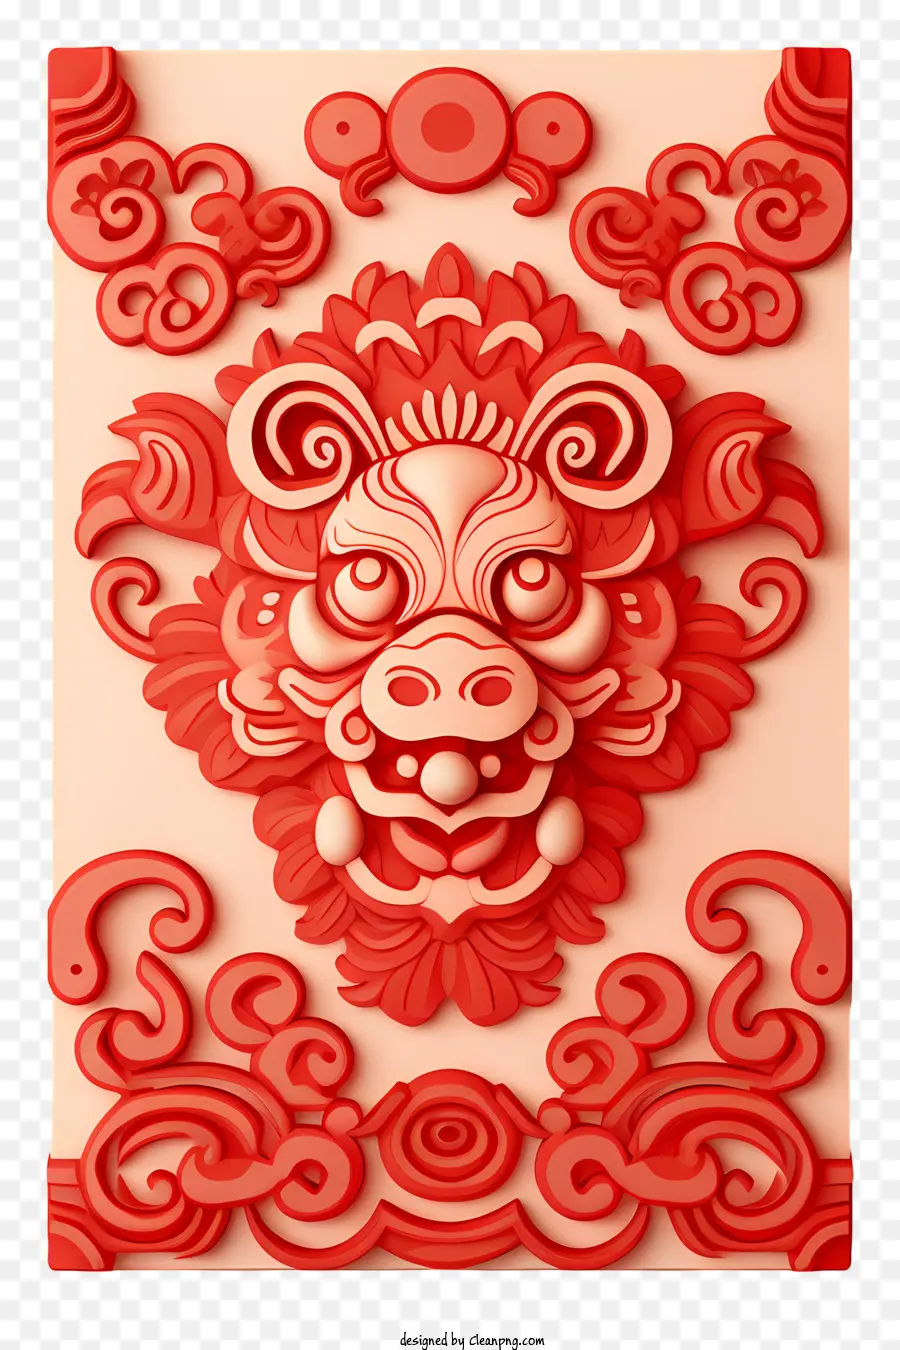 Tết nguyên đán - Rồng đỏ Trung Quốc với biểu hiện dữ dội và nền hoa